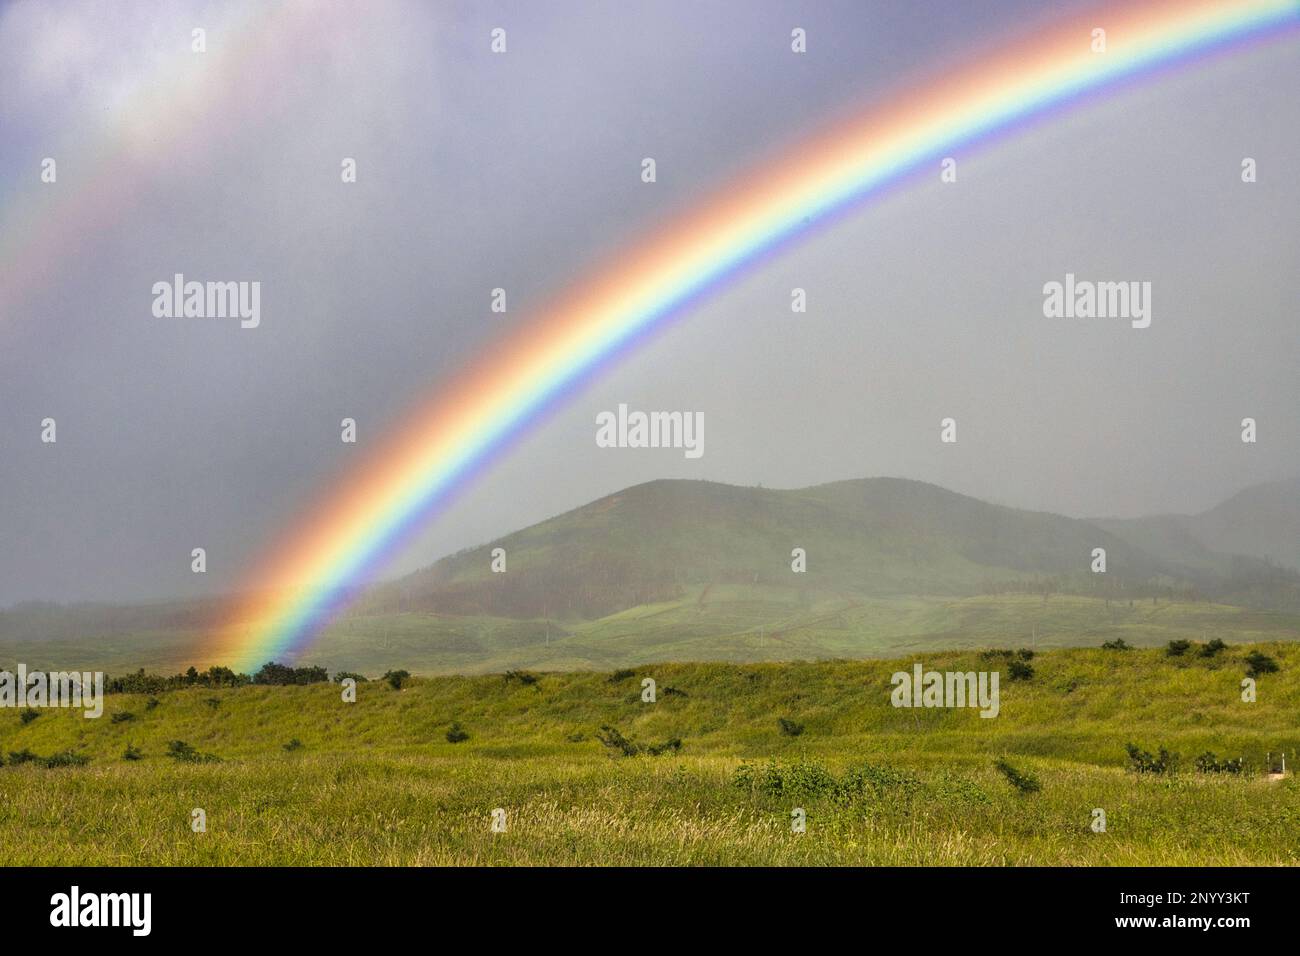 Wunderschöner Regenbogen, der die Berge von West maui umgibt. Stockfoto